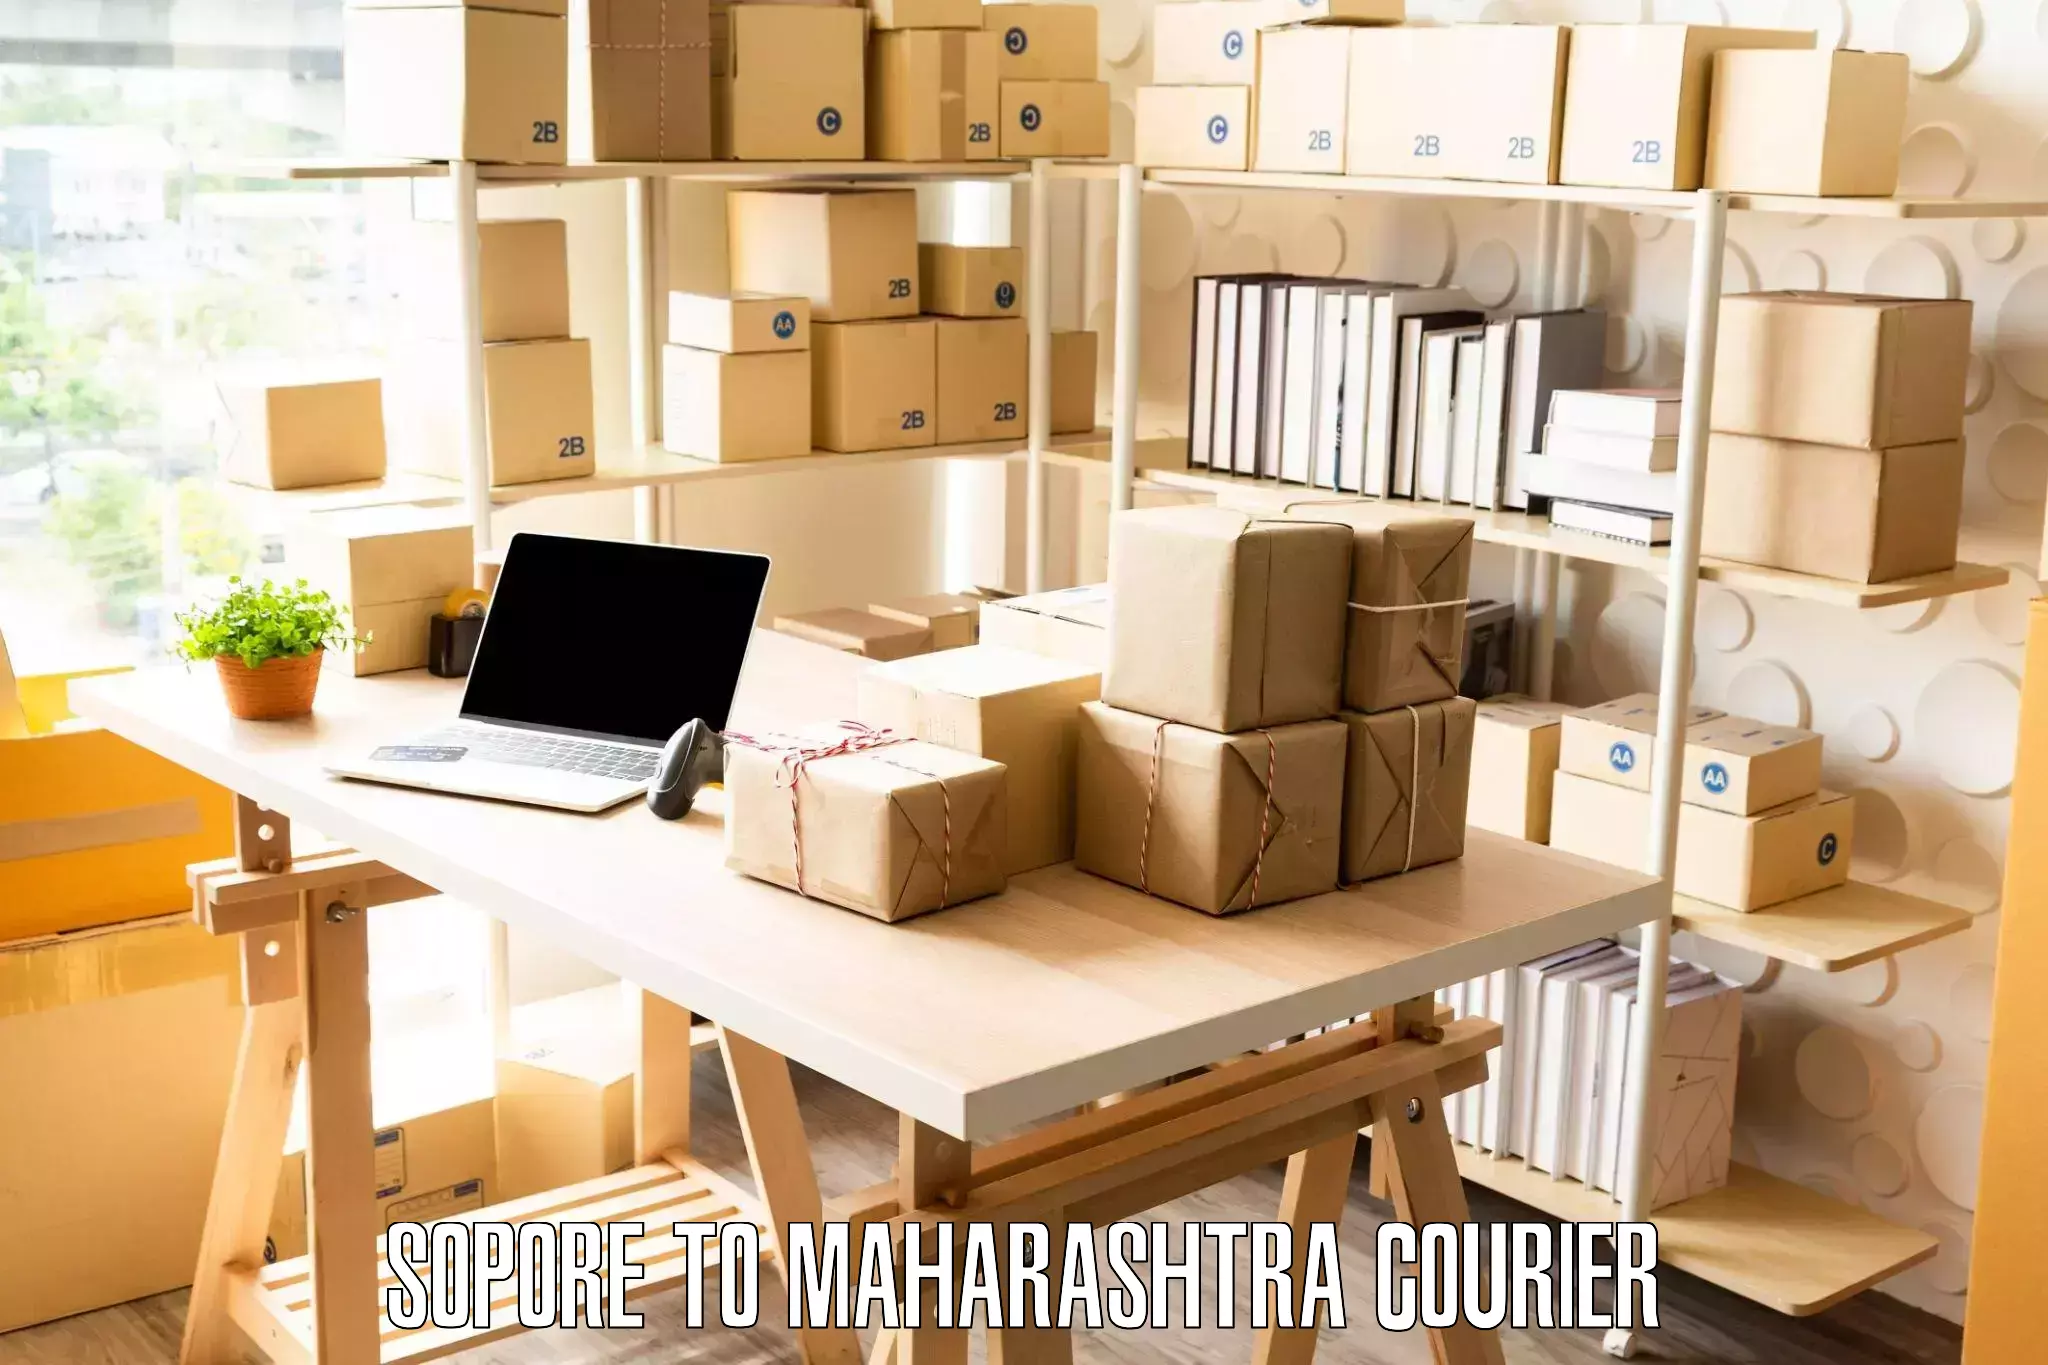 Full-service household moving Sopore to Maharashtra